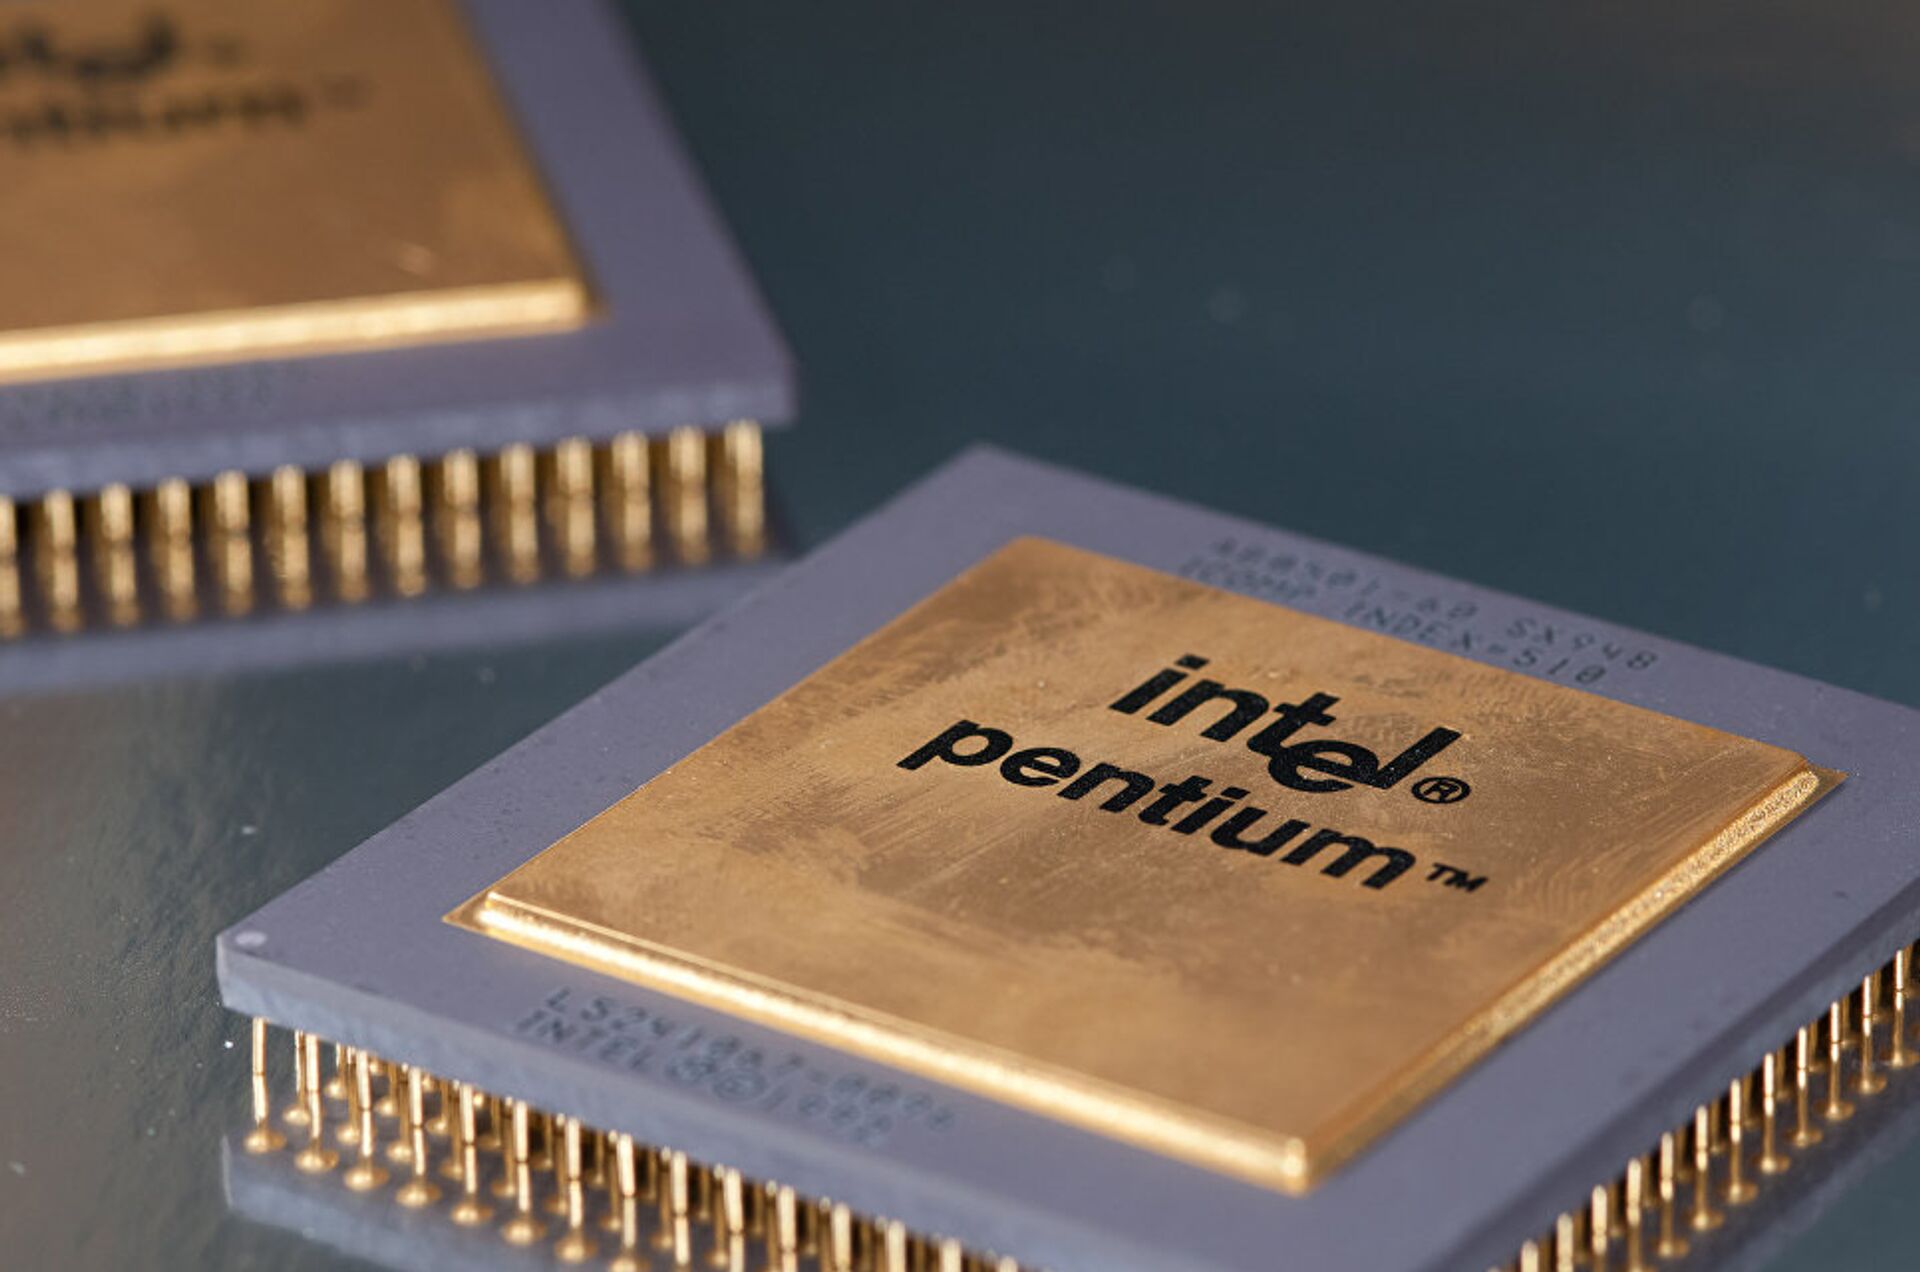 Intel Pentium 60 - Sputnik International, 1920, 26.07.2022